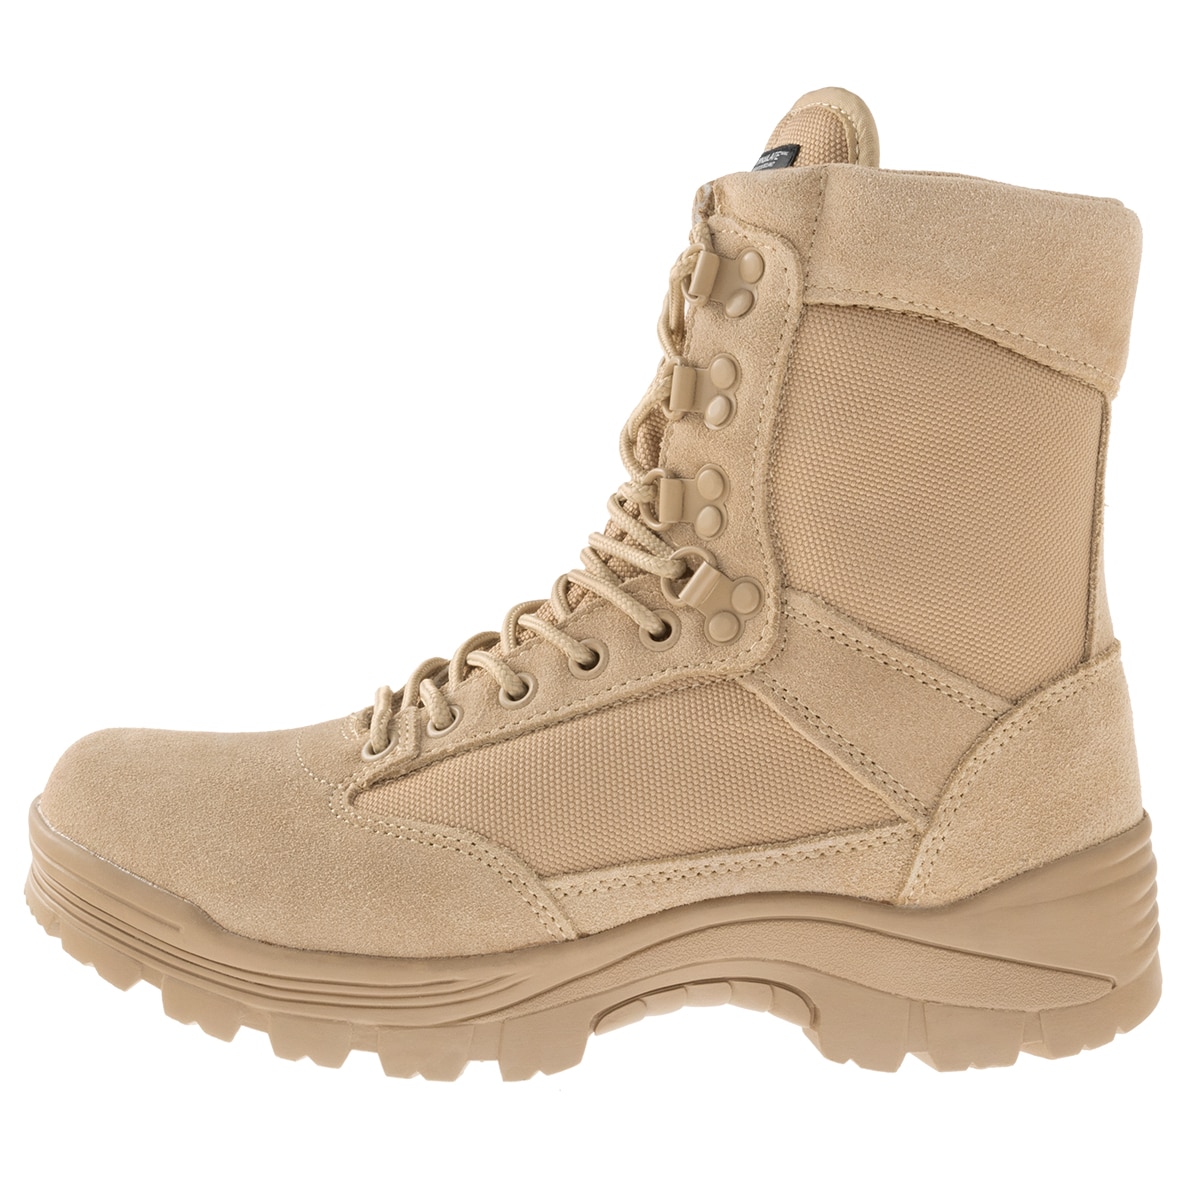 Buty Mil-Tec Tactical Boots - Khaki